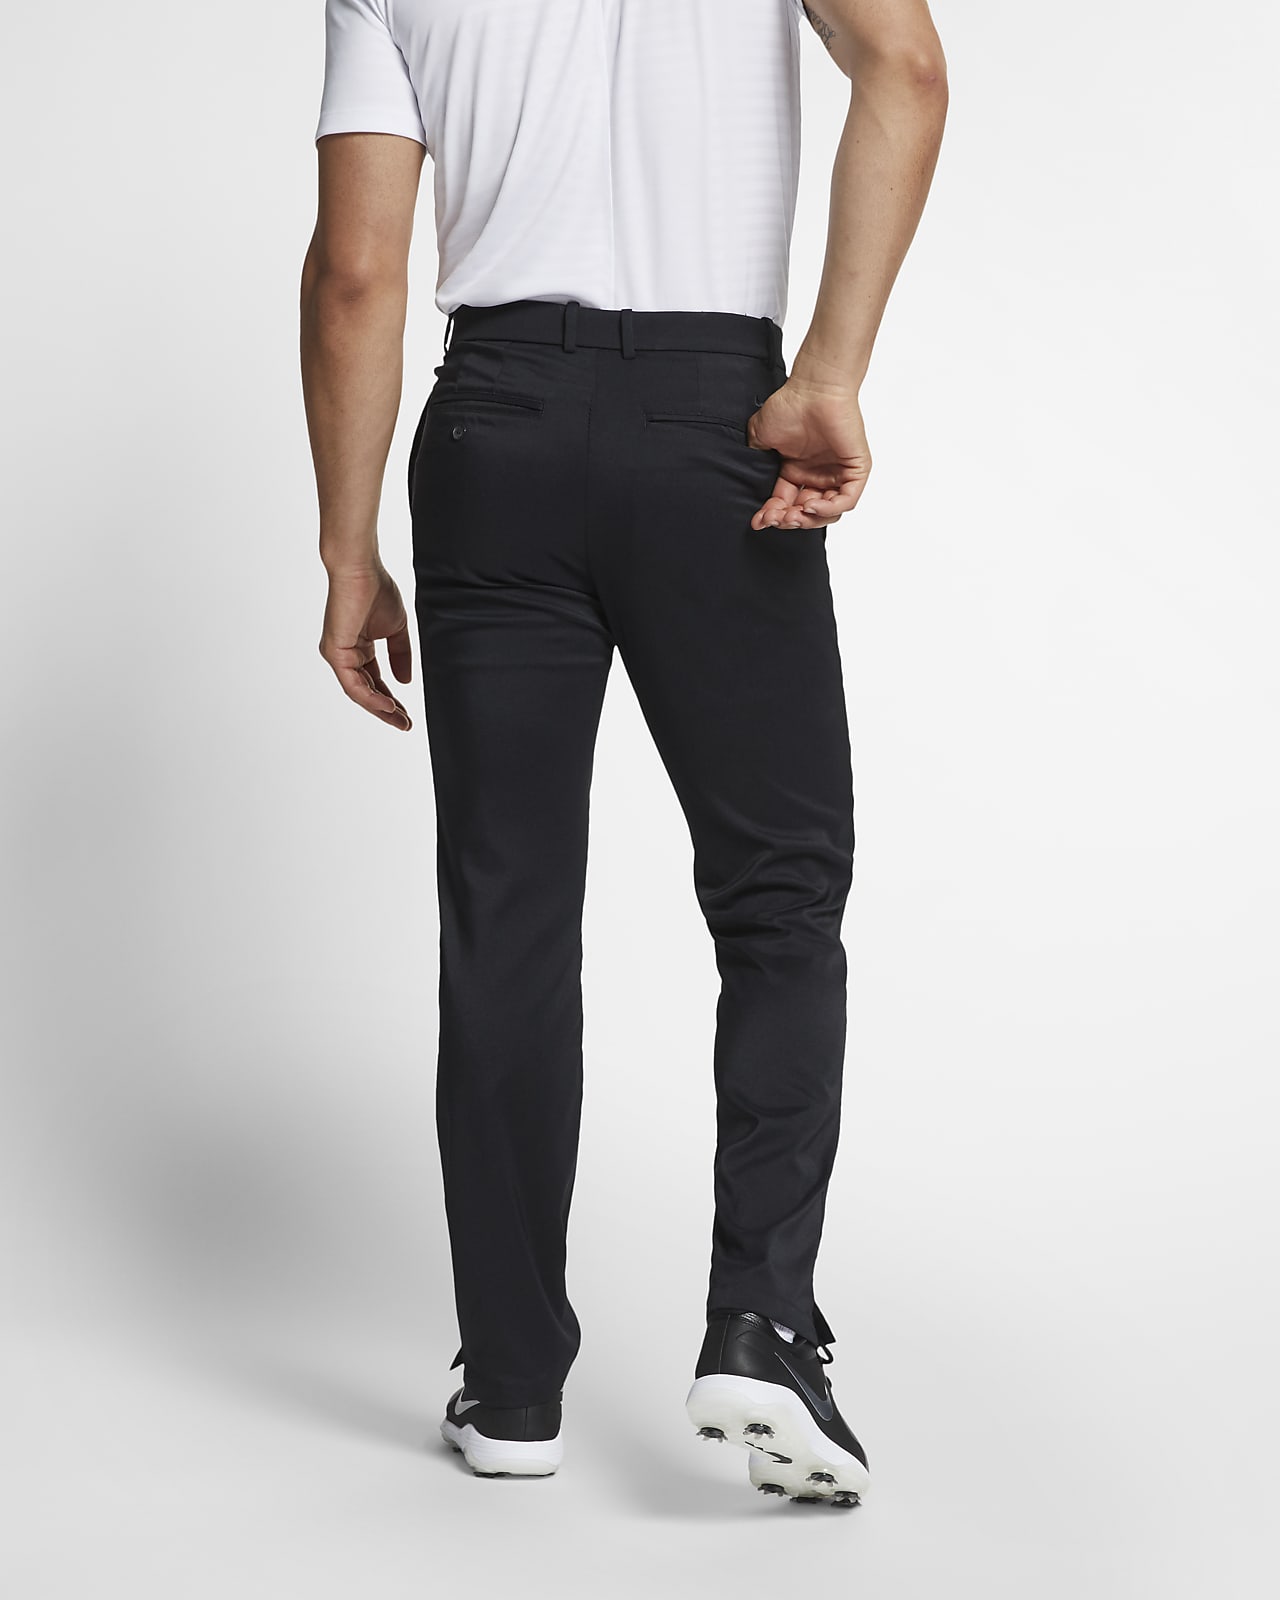 black nike golf trousers